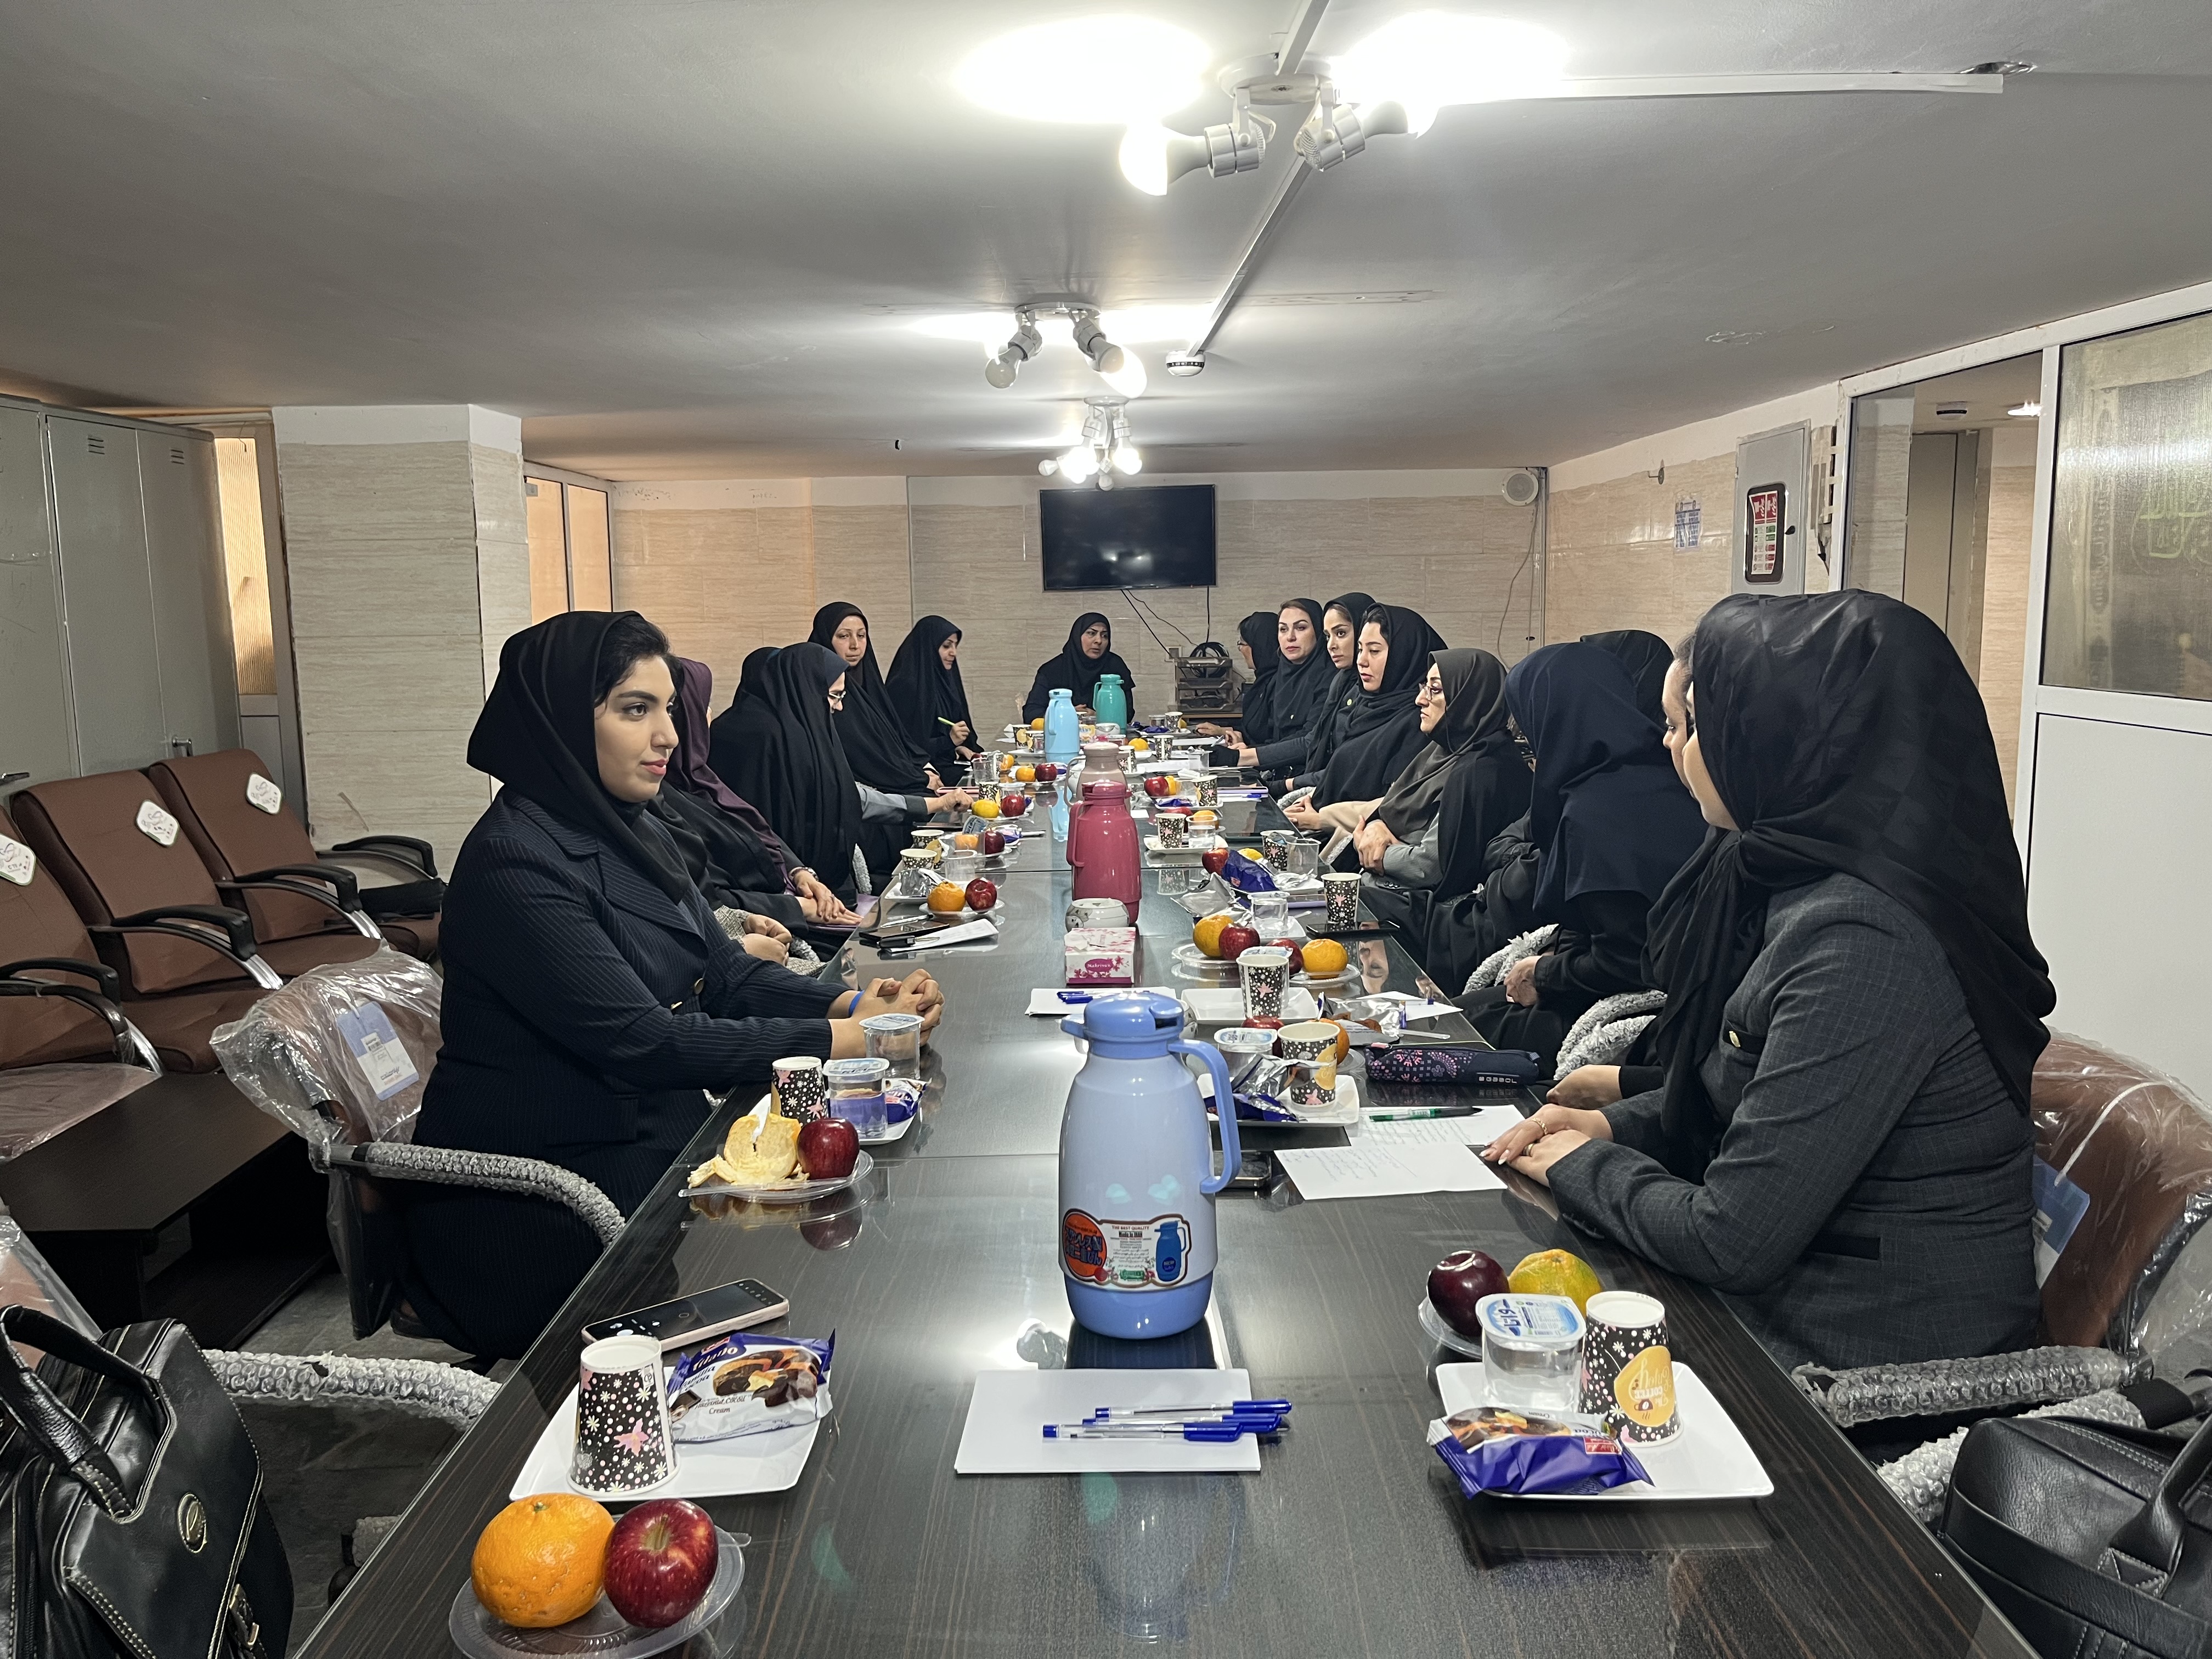 جلسه مشترک کمیسیون بانوان کانون وکلای دادگستری استان اصفهان و قضات مشاور دادگاه خانواده برگزار شد